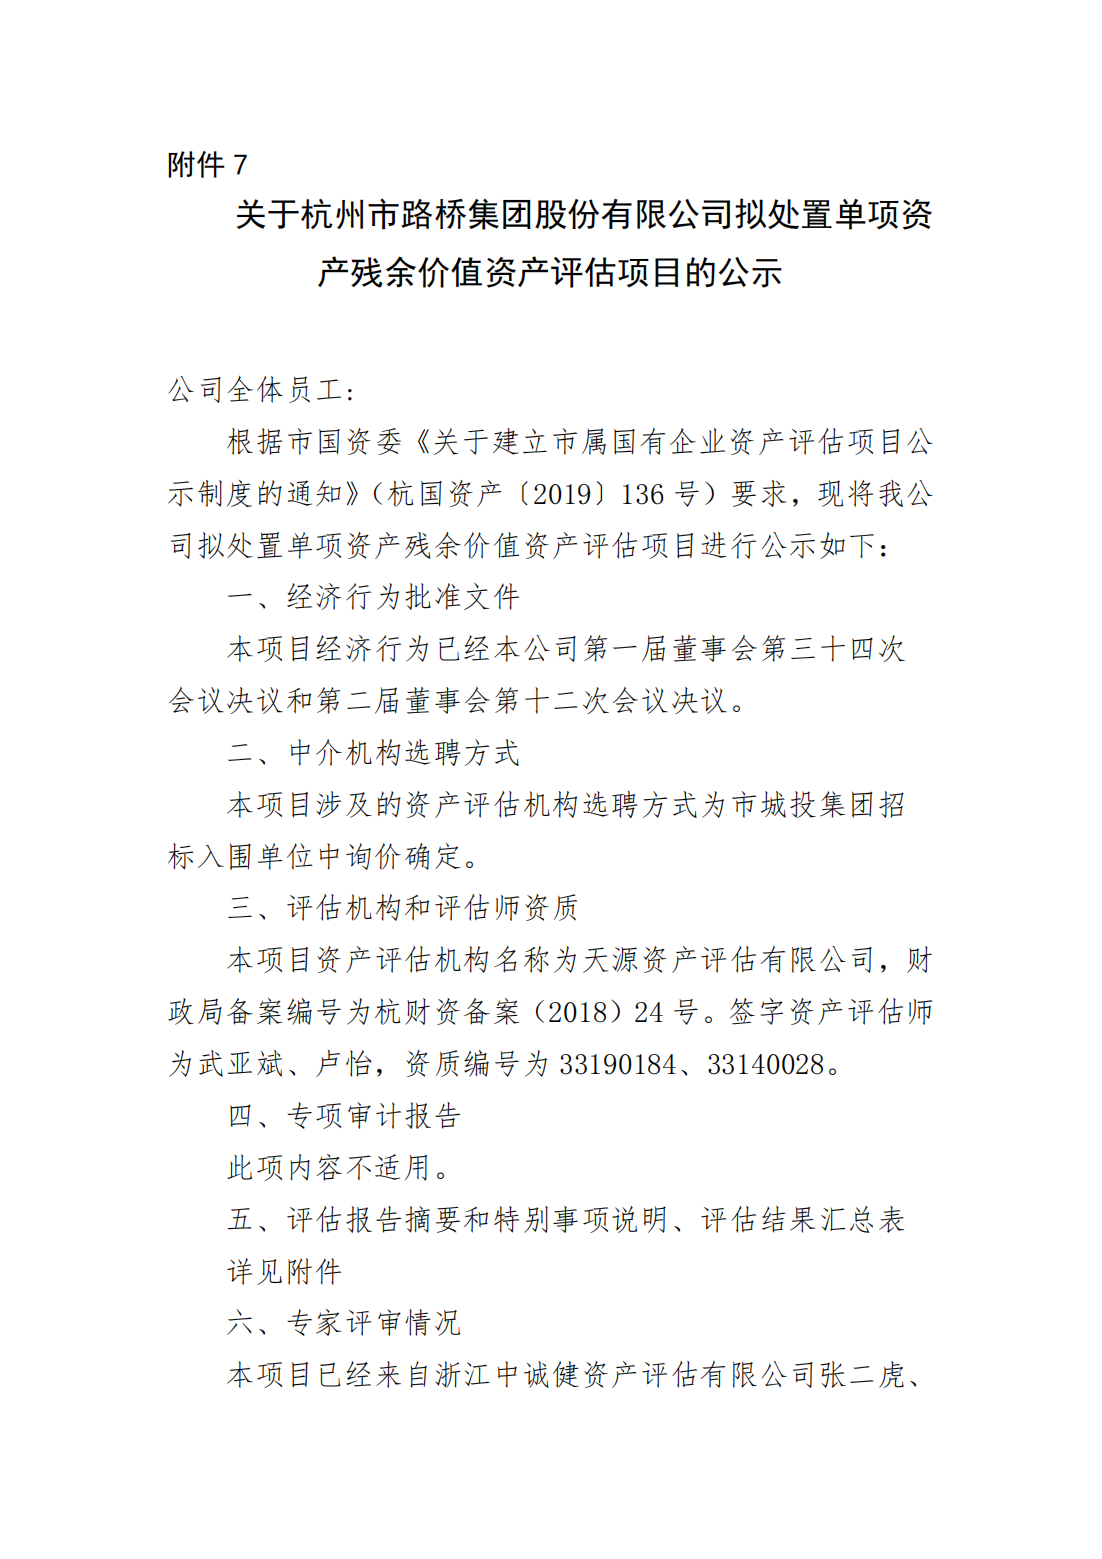 关于杭州市路桥集团股份有限公司拟处置单项资产残余价值资产评估项目的公示_00.png